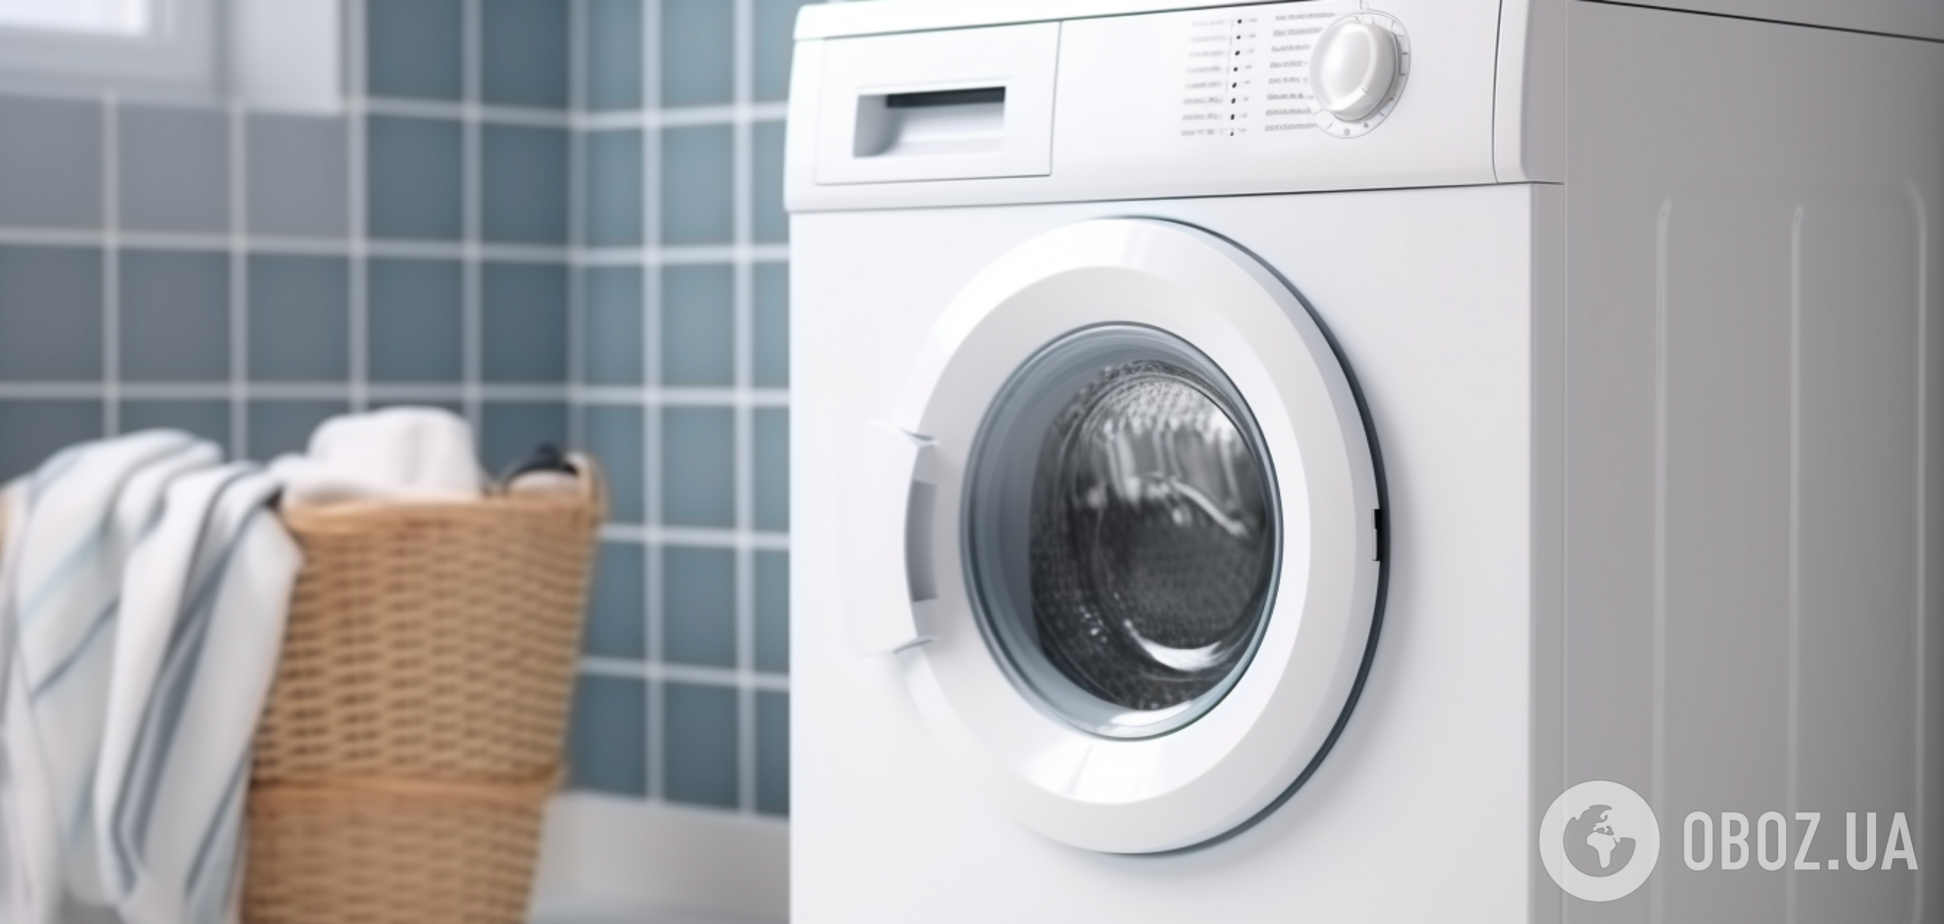 Найпростіший спосіб почистити пральну машину: витратите мінімум засобів і зусиль